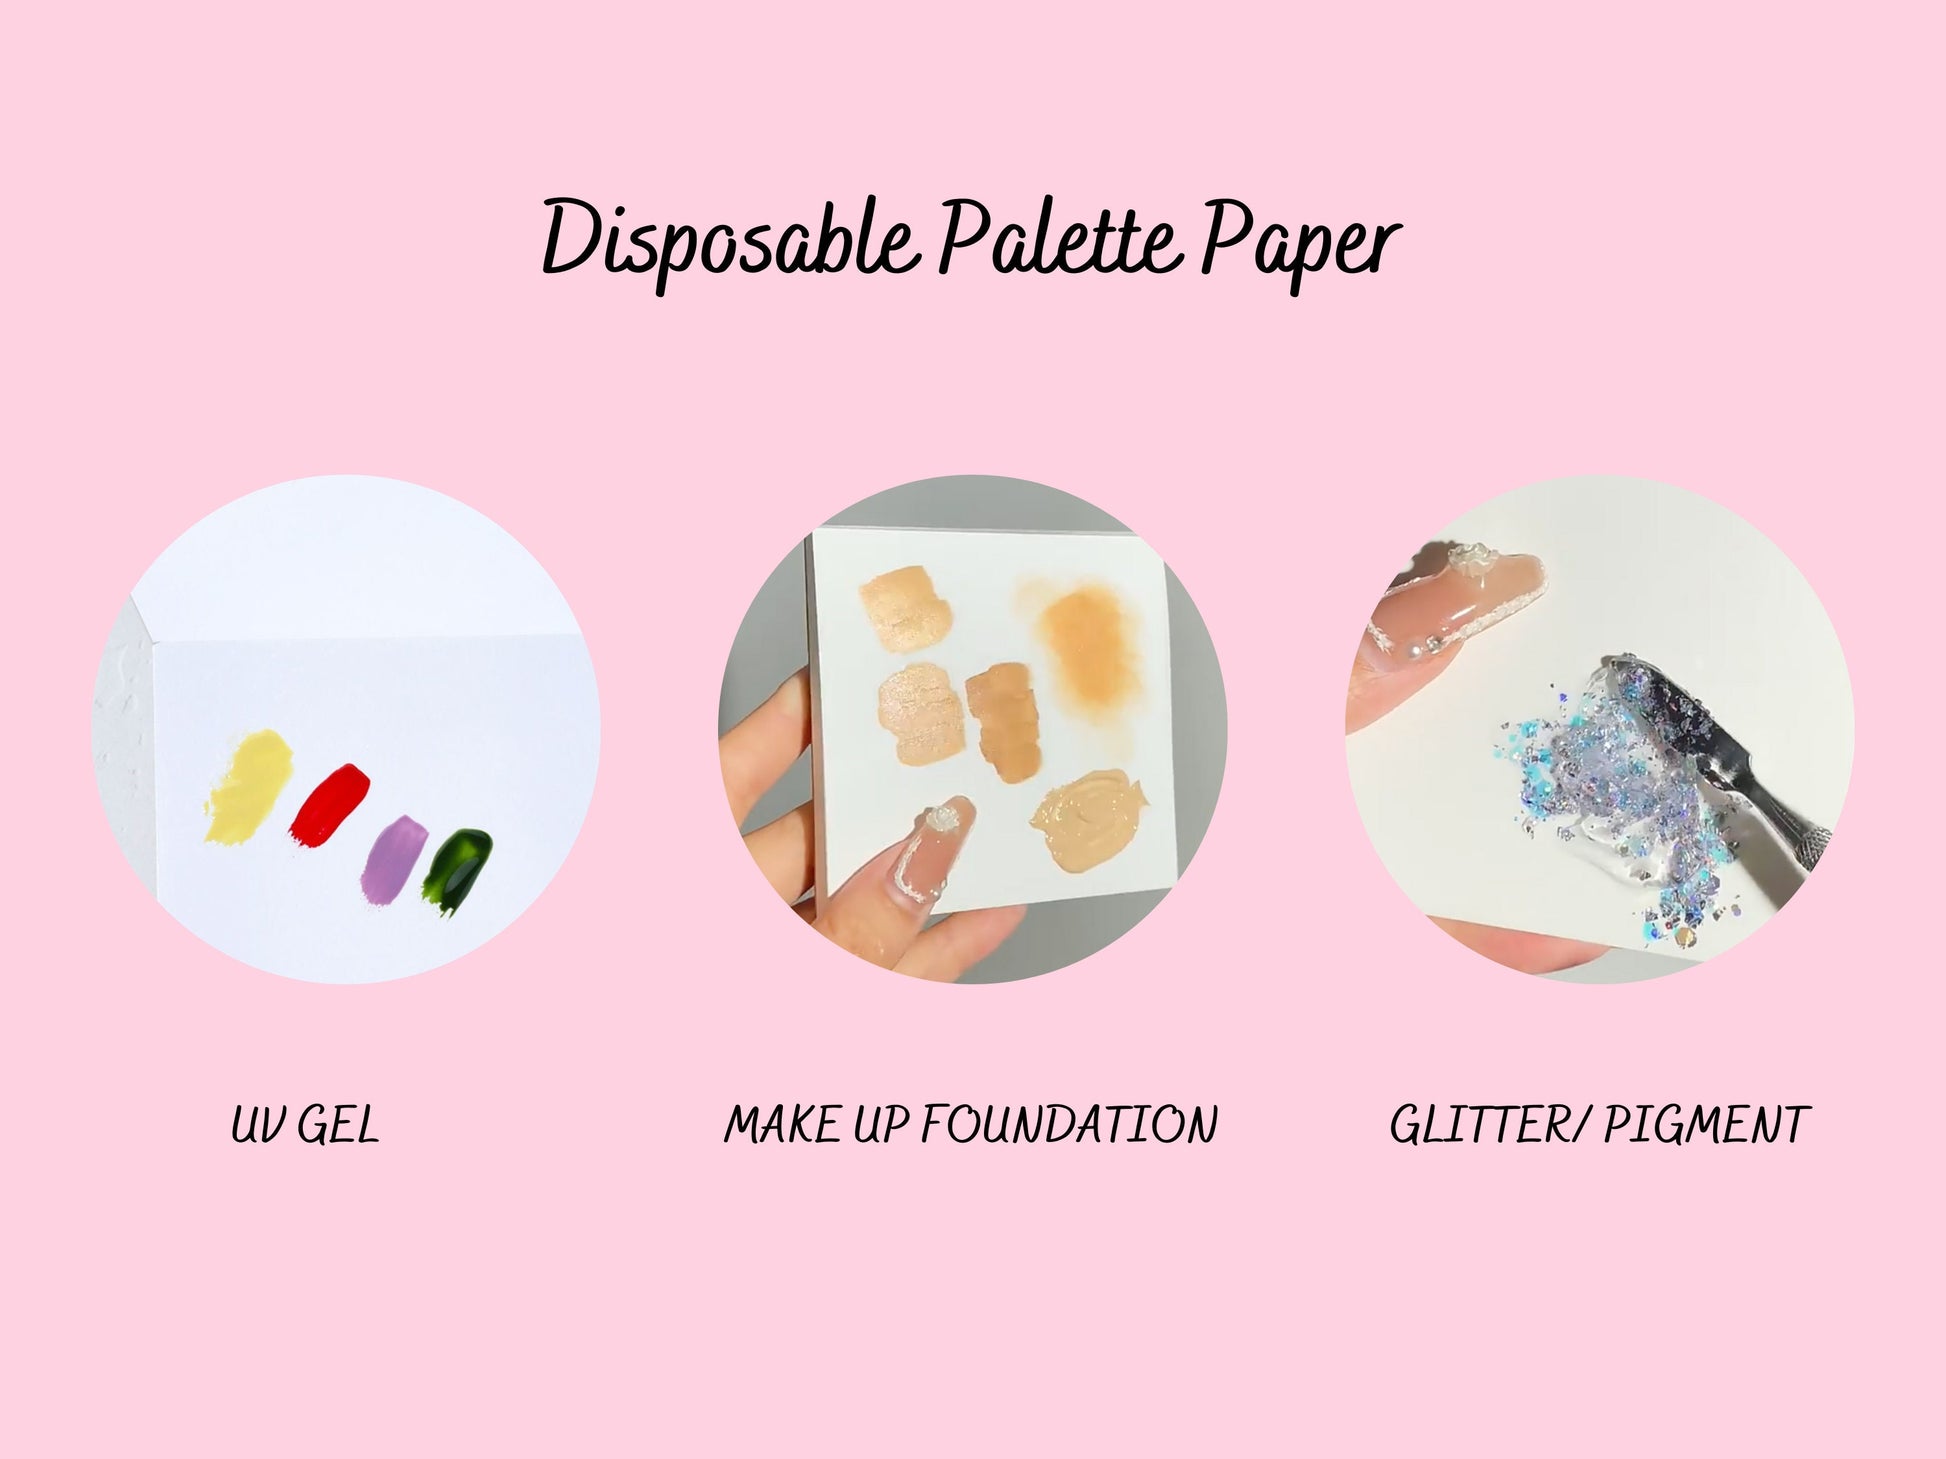 50pcs Waterproof Disposable Palette Color Blending Paper/ Colors Mixing Drawing Paint UV gel Makeup Foundation Glitter pigment mix paper